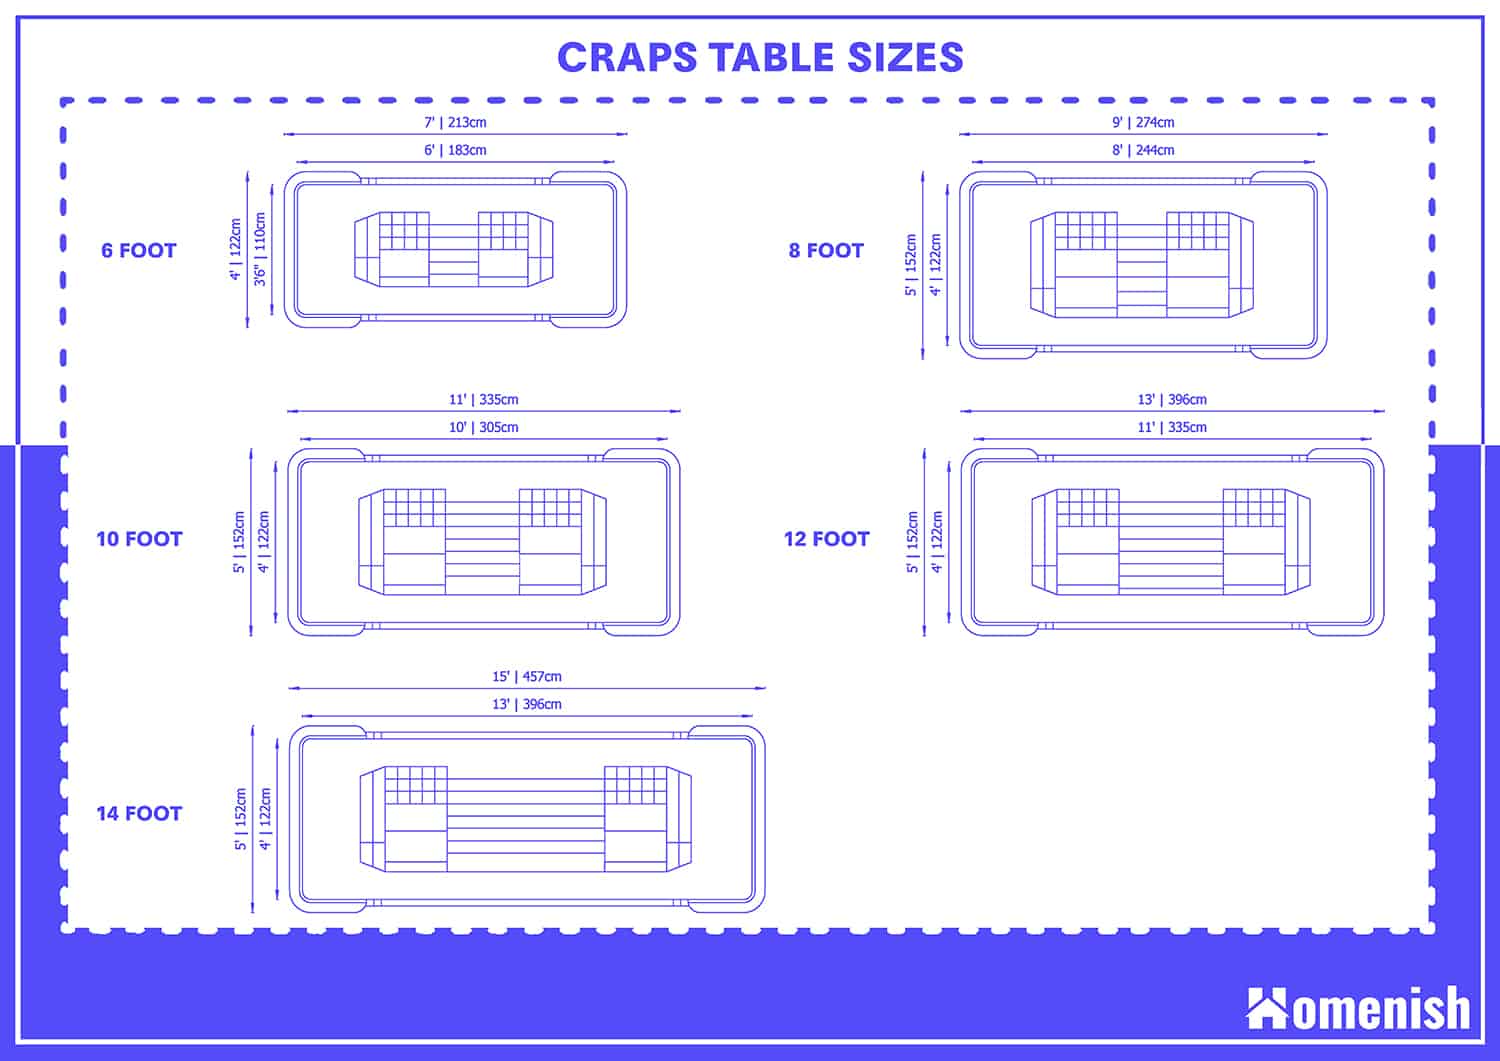 Craps Table Sizes